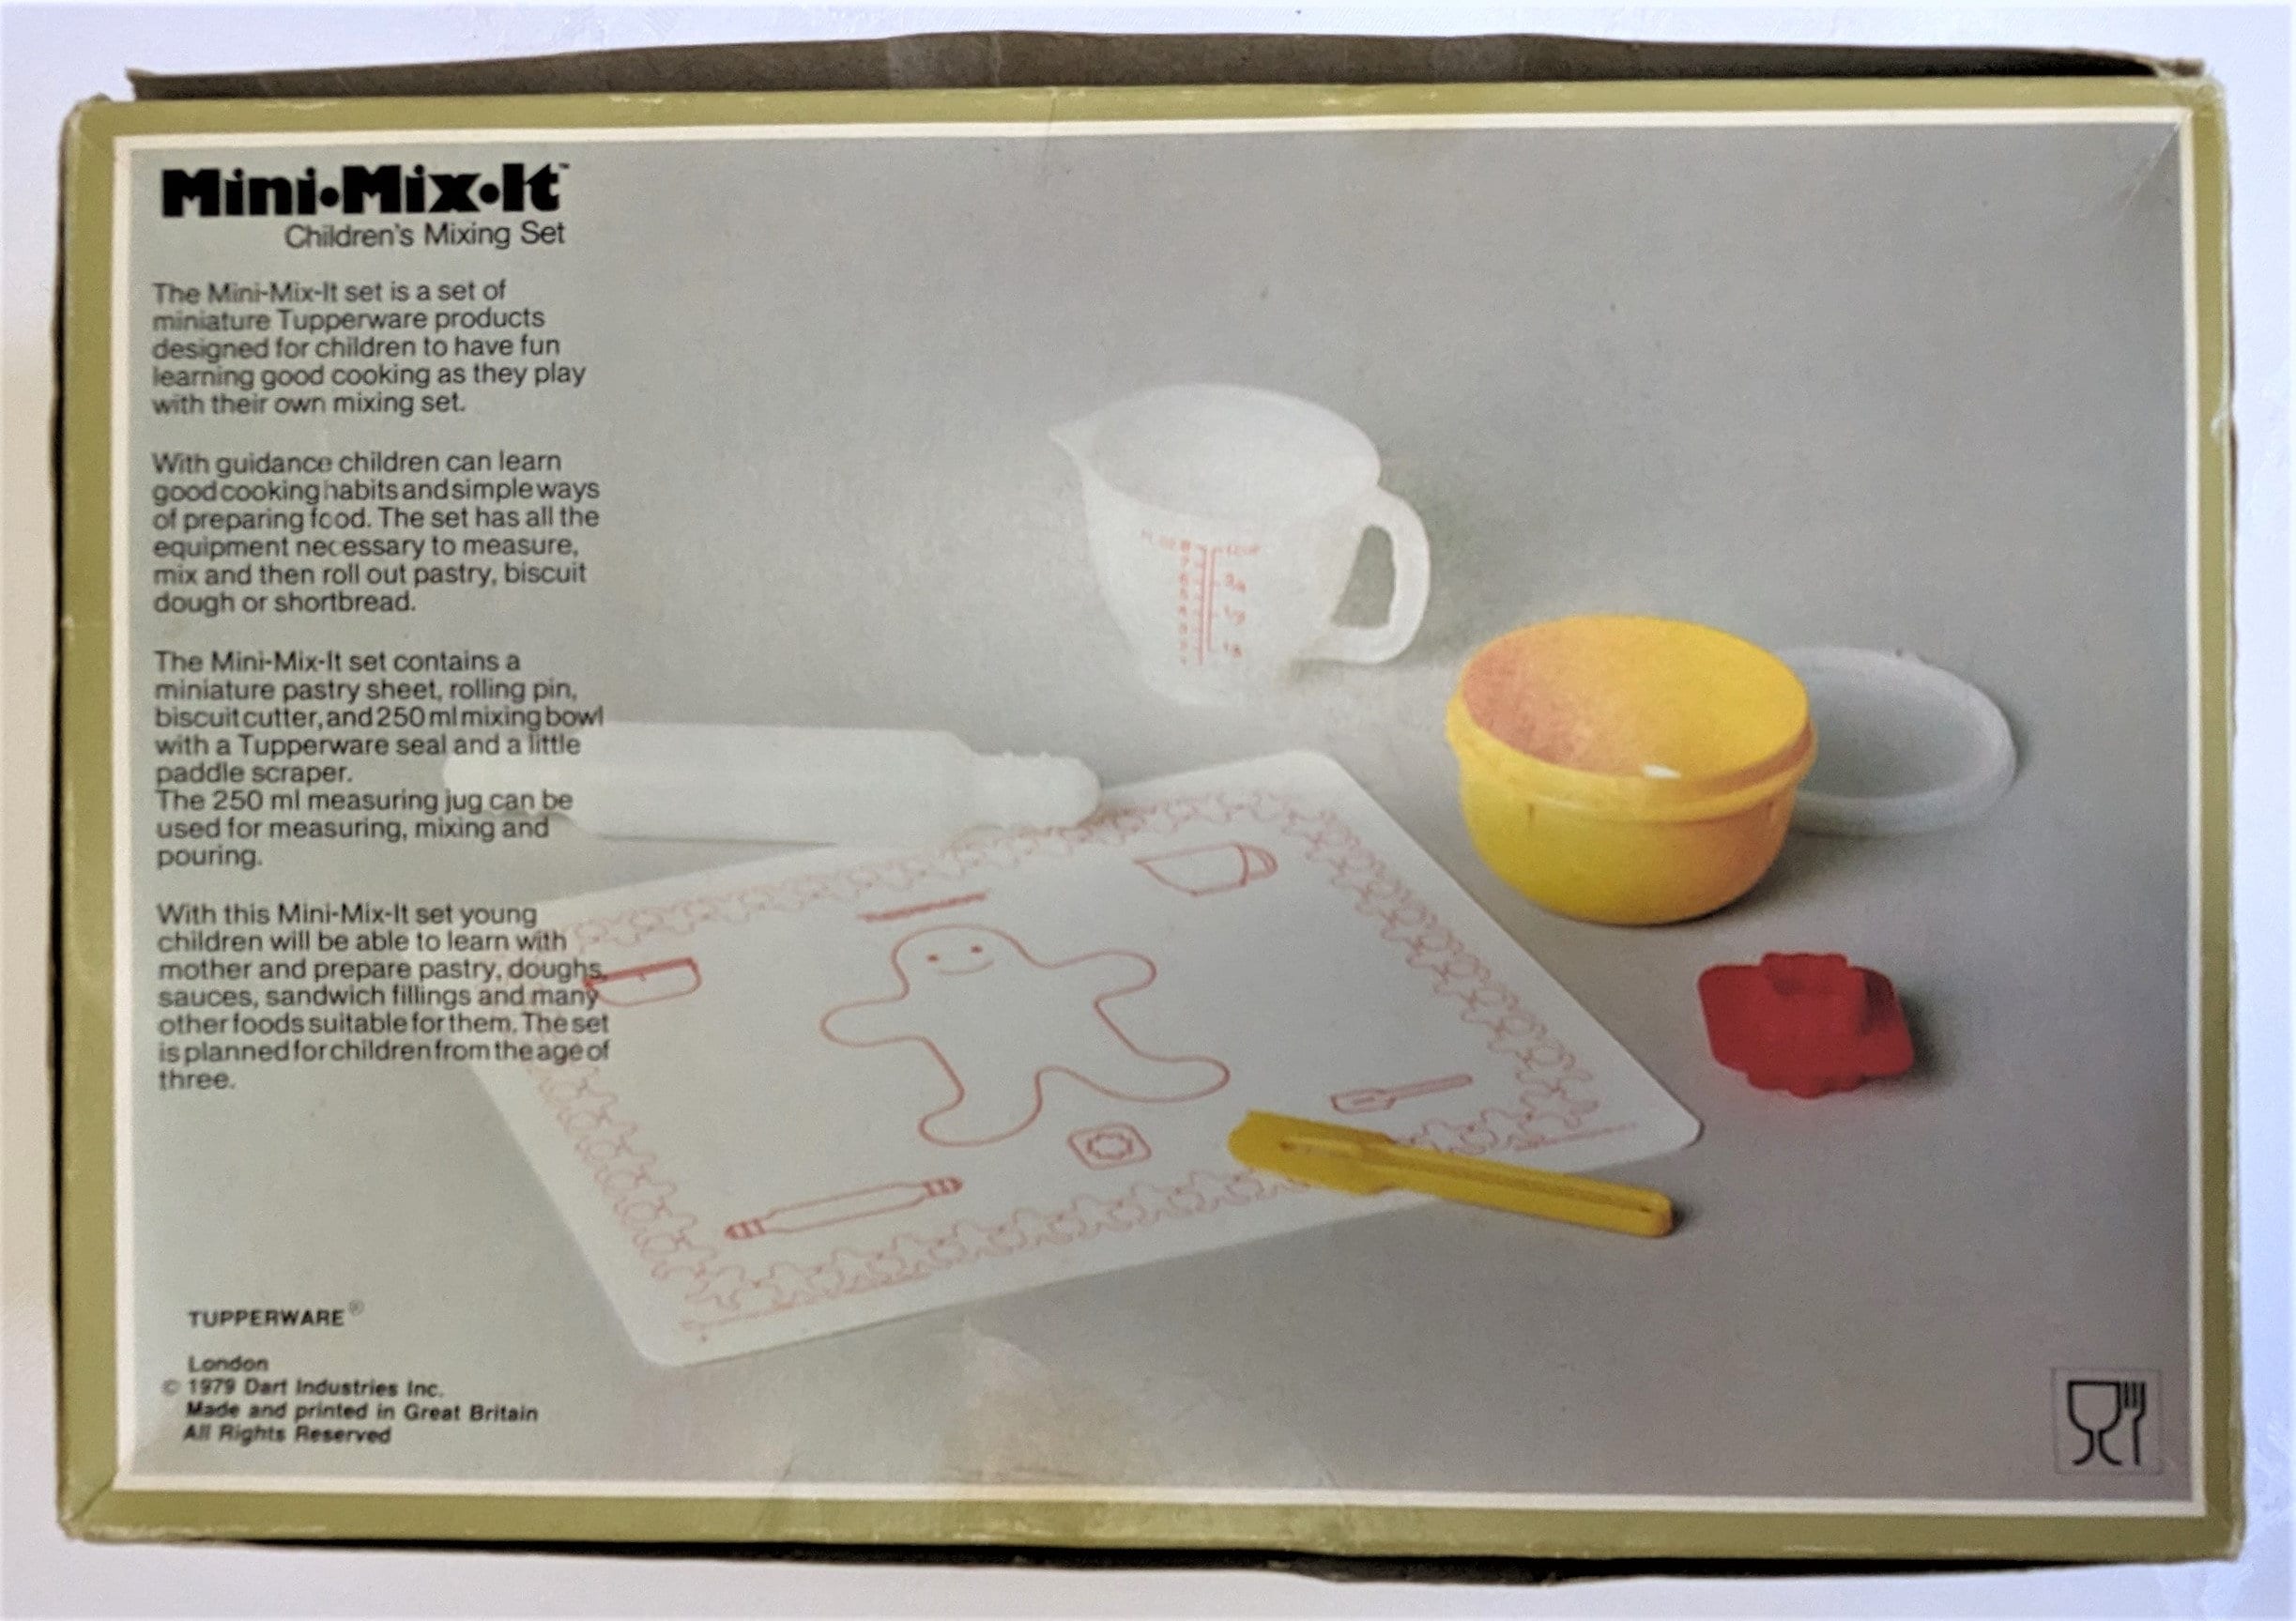 metrisk Hæl miles Tupperware Mini Mix It Children Mixing Set Vintage Toy 3 - Etsy Israel